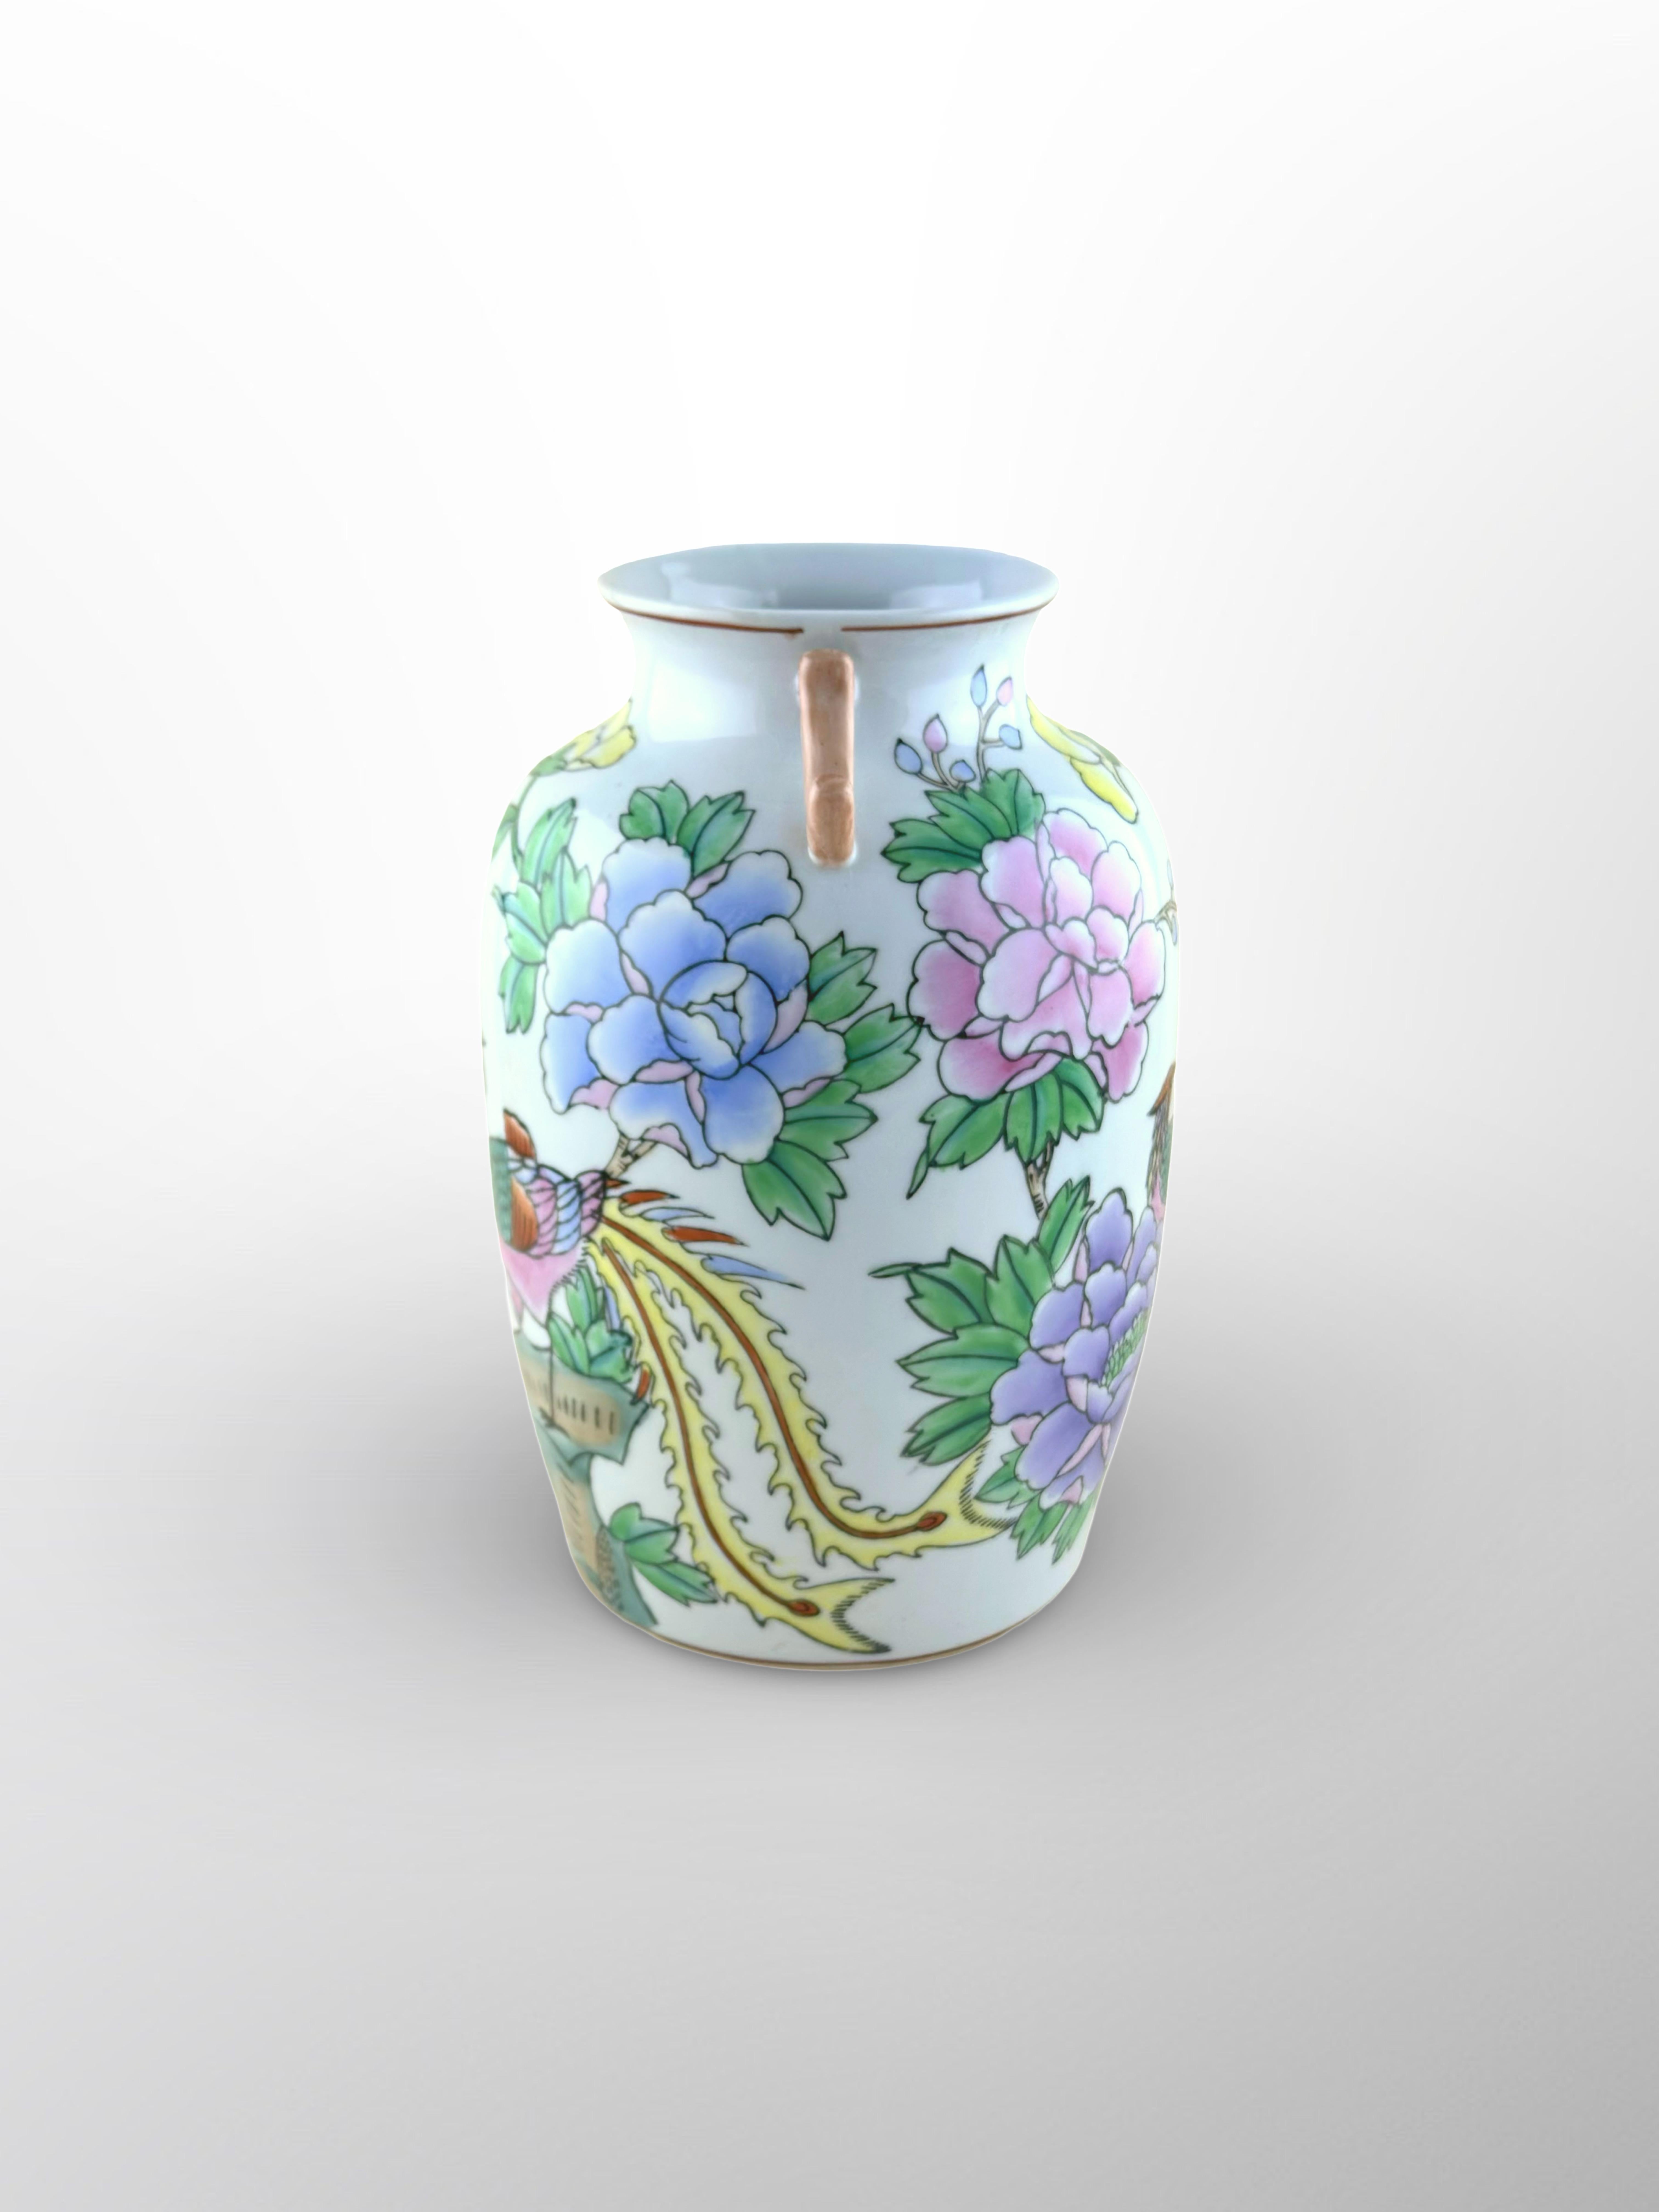 Un vase chinois vintage de style Kangxi, fabriqué en Chine vers la seconde moitié du XXe siècle, aux alentours des années 1970. 

Le vase en porcelaine a été créé selon la forme 